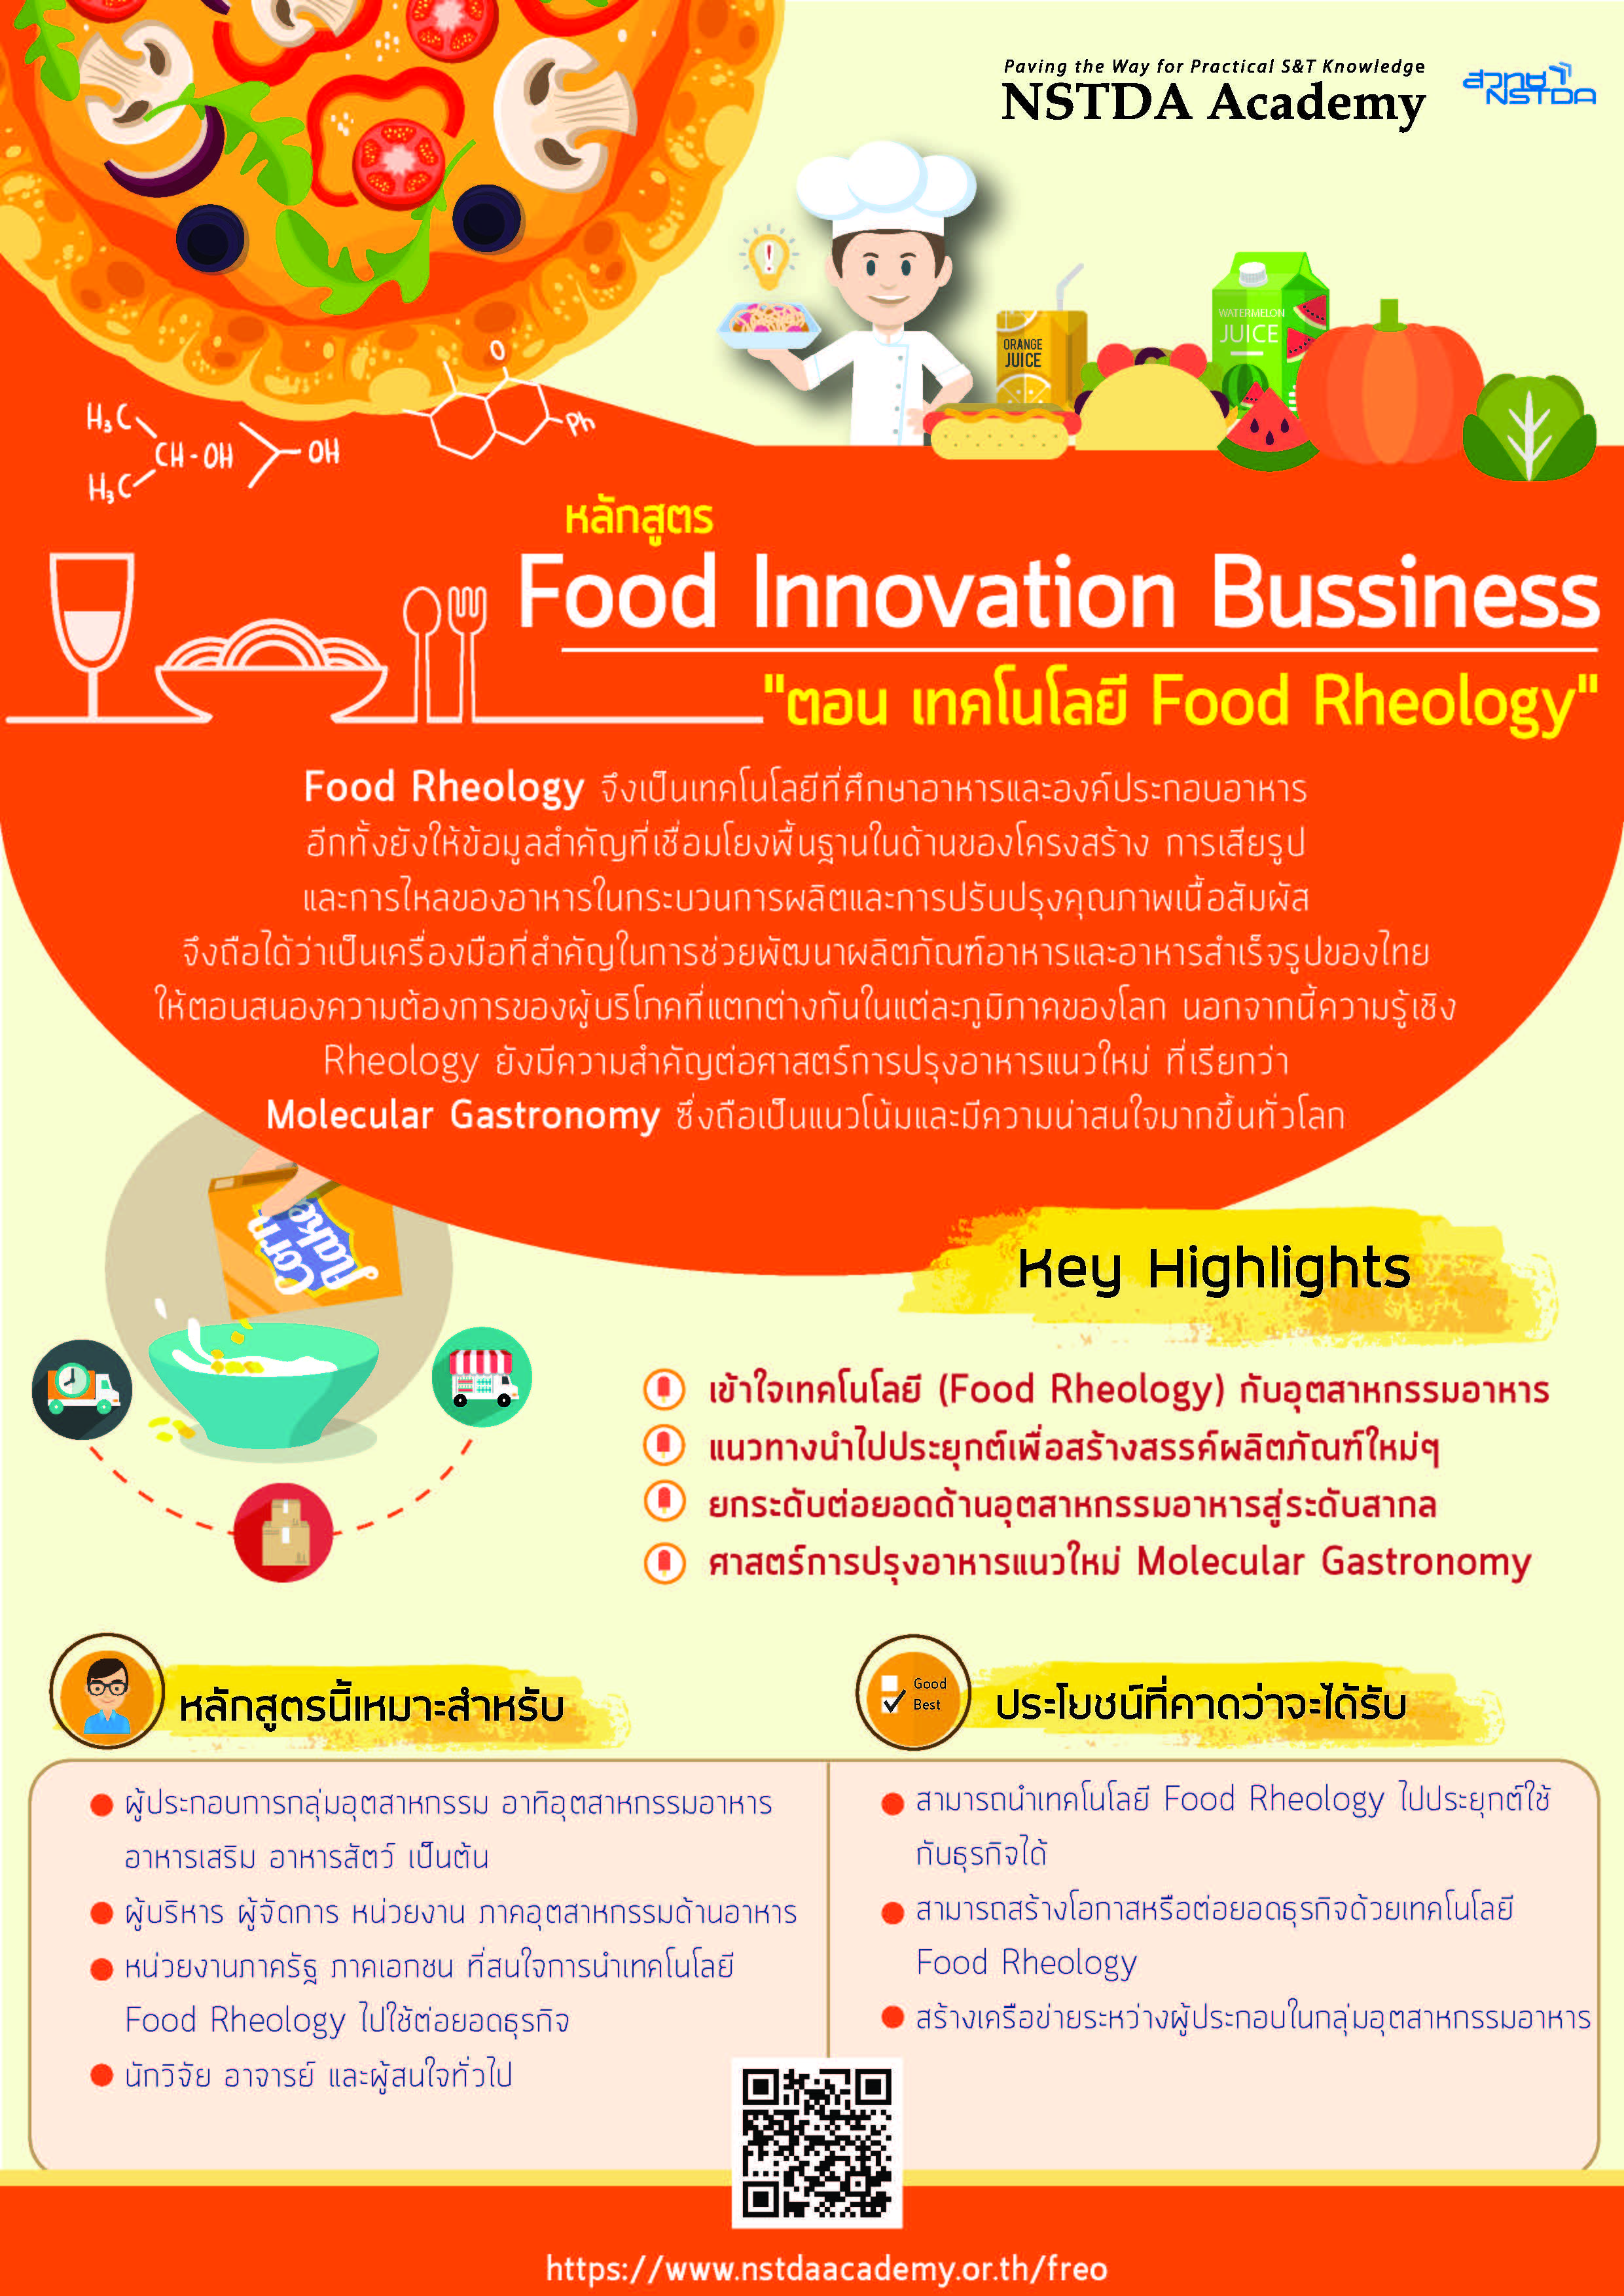 หลักสูตร Food Innovation Business "ตอน เทคโนโลยี Food Rheology"